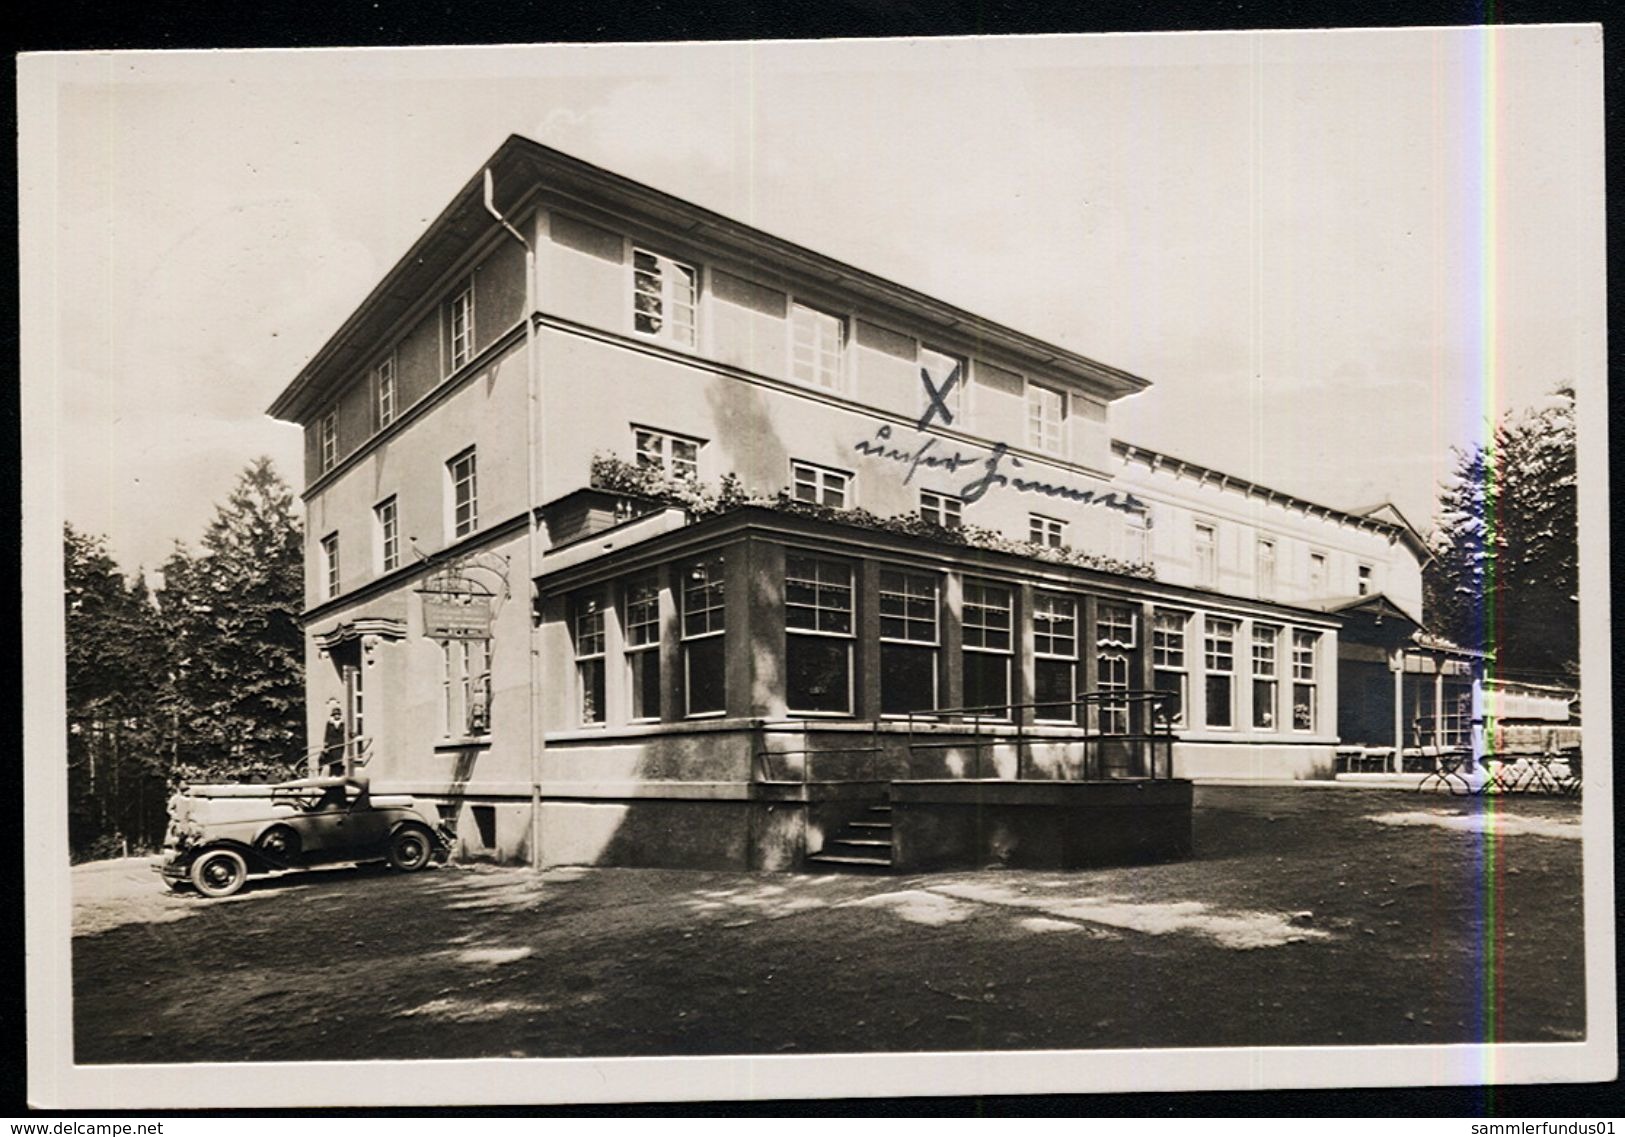 AK/CP  Mölln  Kurhaus Am Schmalsee  Gel./circ. 1933   Erhalt./Condit.  1-    Nr. 00162 - Mölln